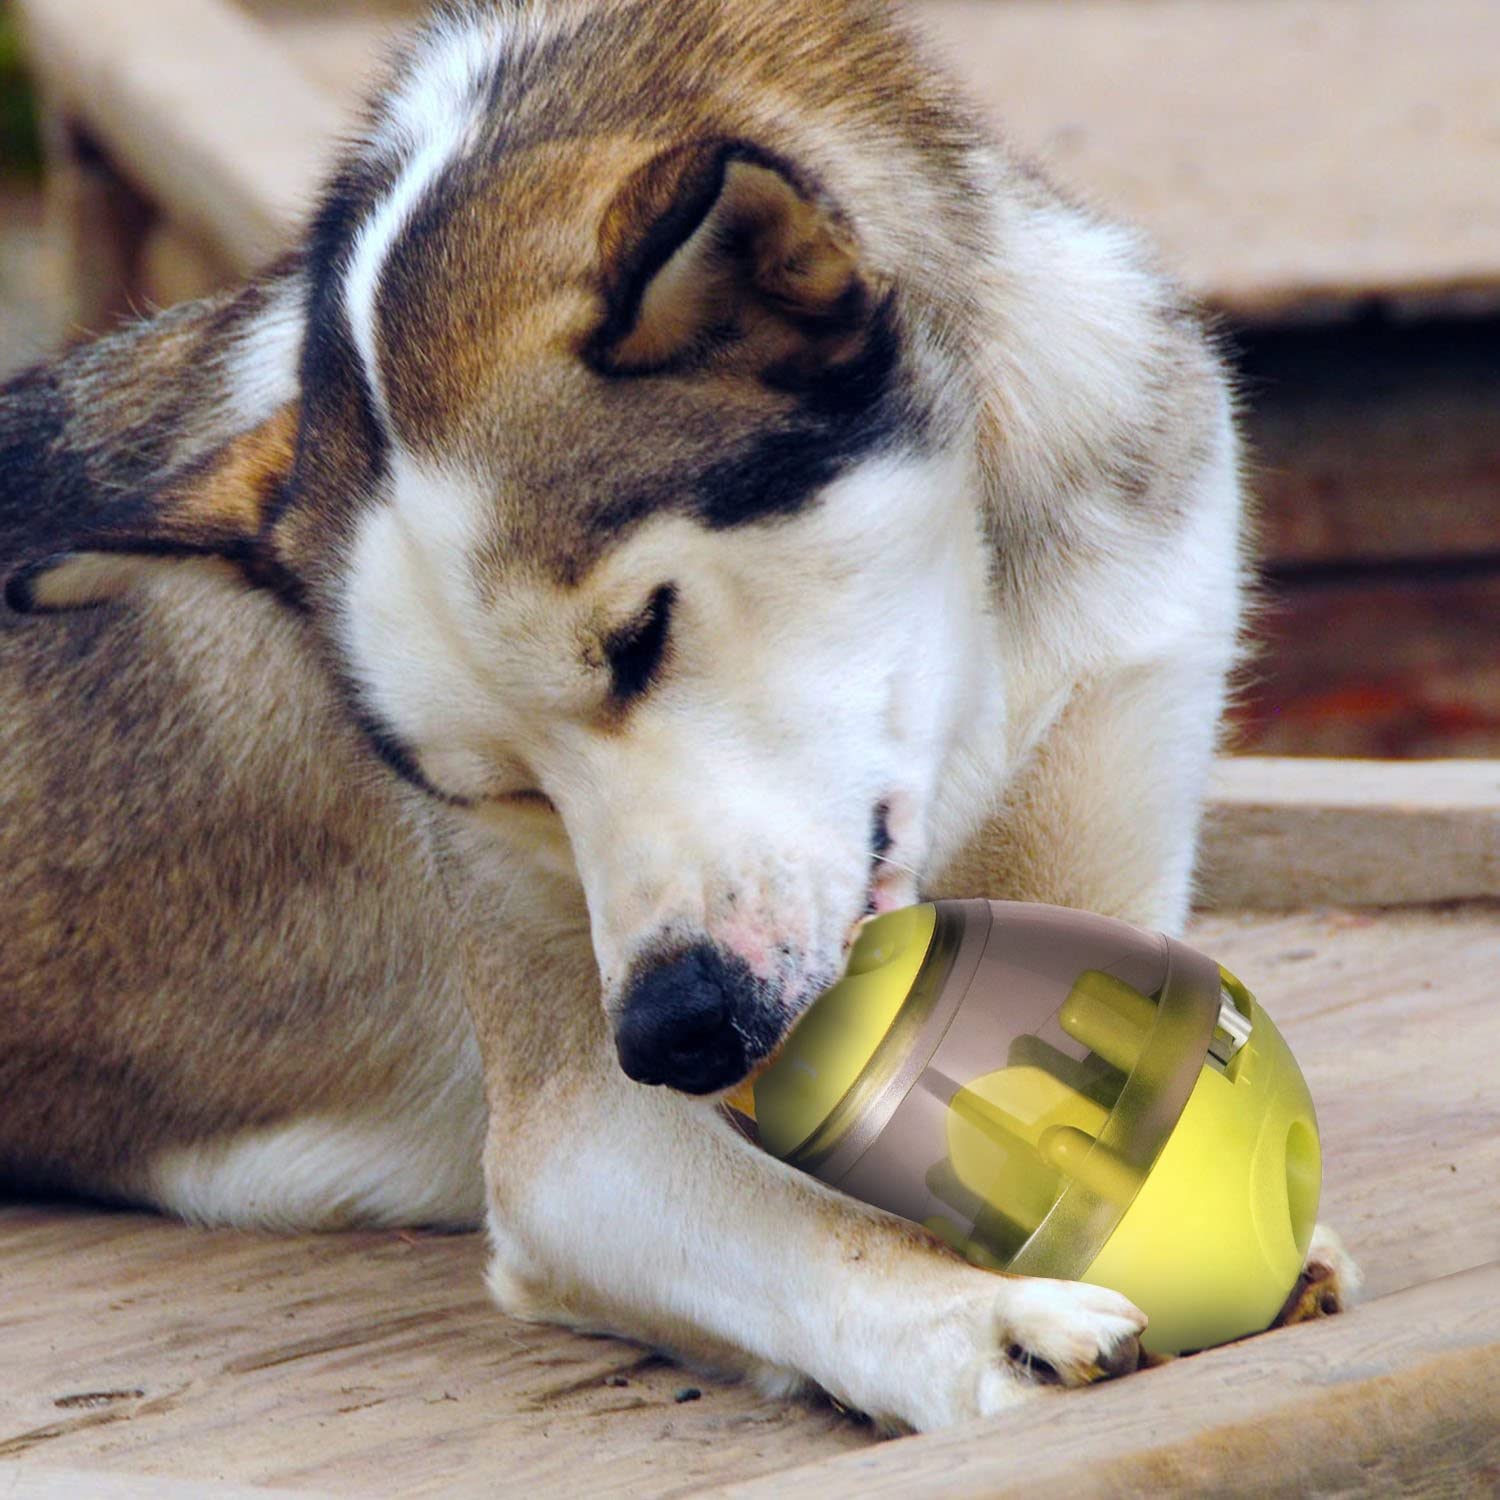  Juguete Comida Perro,Payxuan Actualizado Bola para Perros Interactivos Para Comer Lento y Ejercicio Intelectual-Verde 